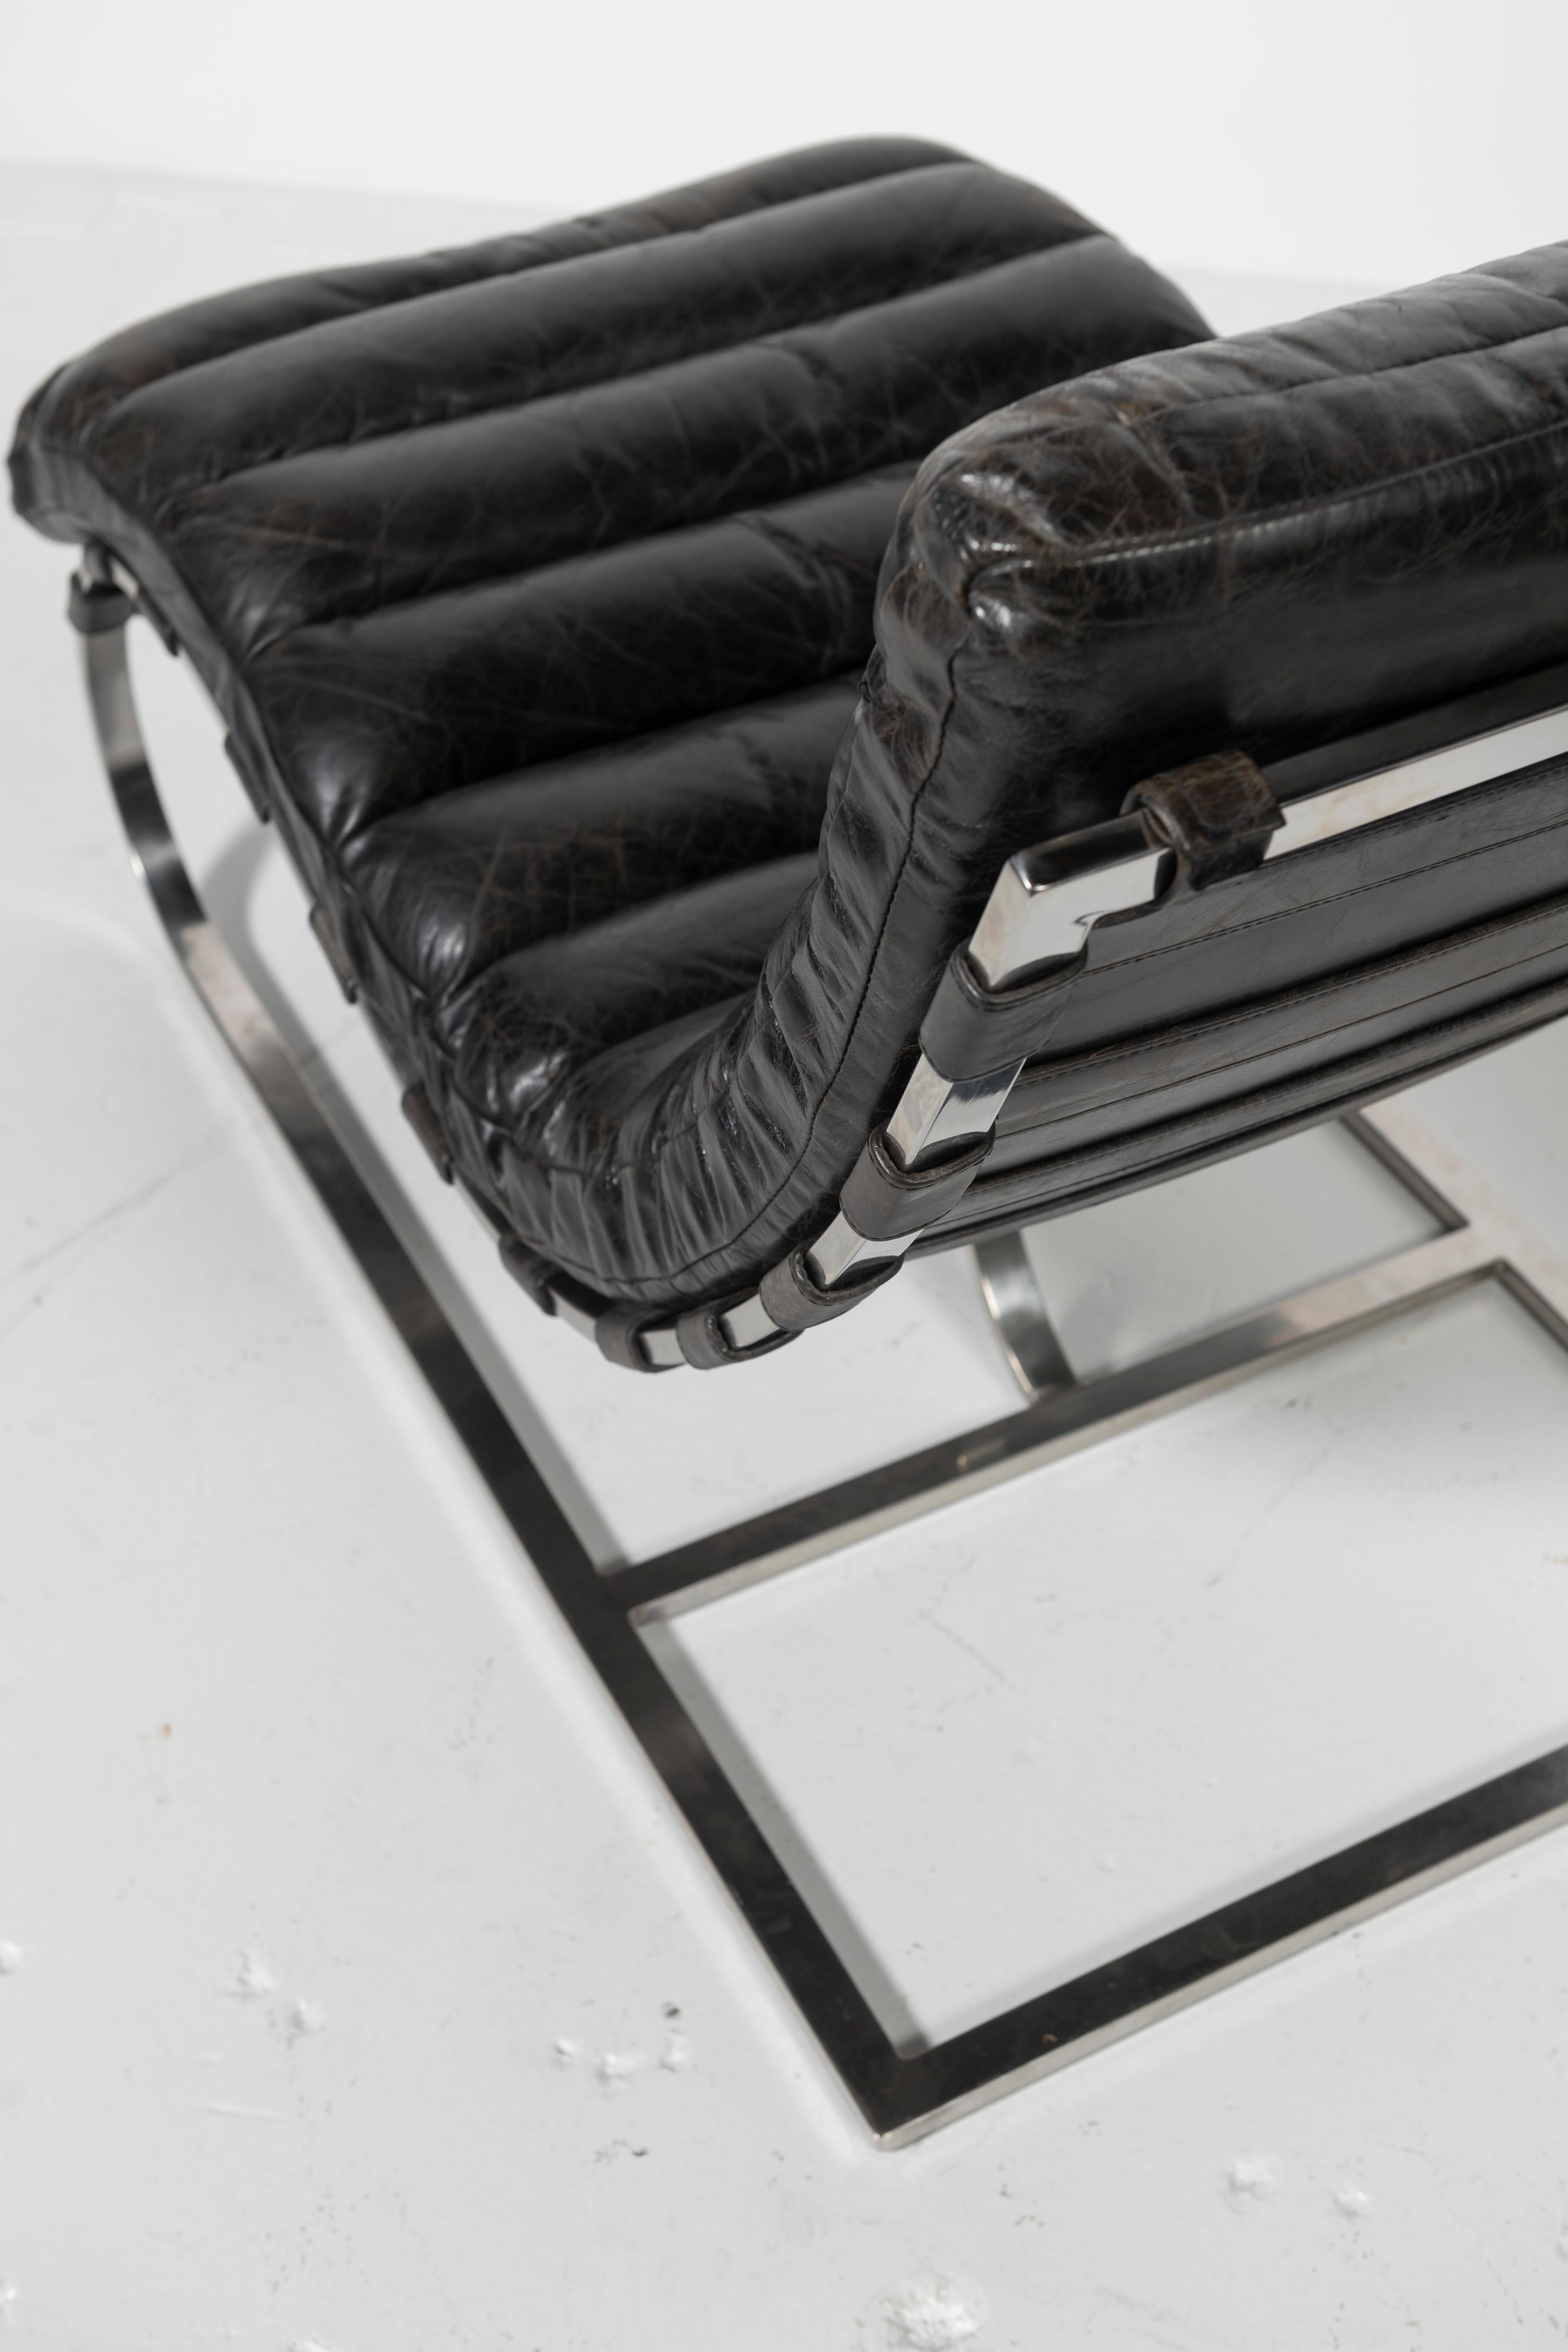 Ein Paar wunderschön abgenutzter schwarzer Ledersessel, die dem Designer Michel Boyer aus Frankreich zugeschrieben werden. Die kanalisierten Lederkissen schweben auf einem polierten Chromgestell mit Lederriemen. Klassisches Design und Komfort